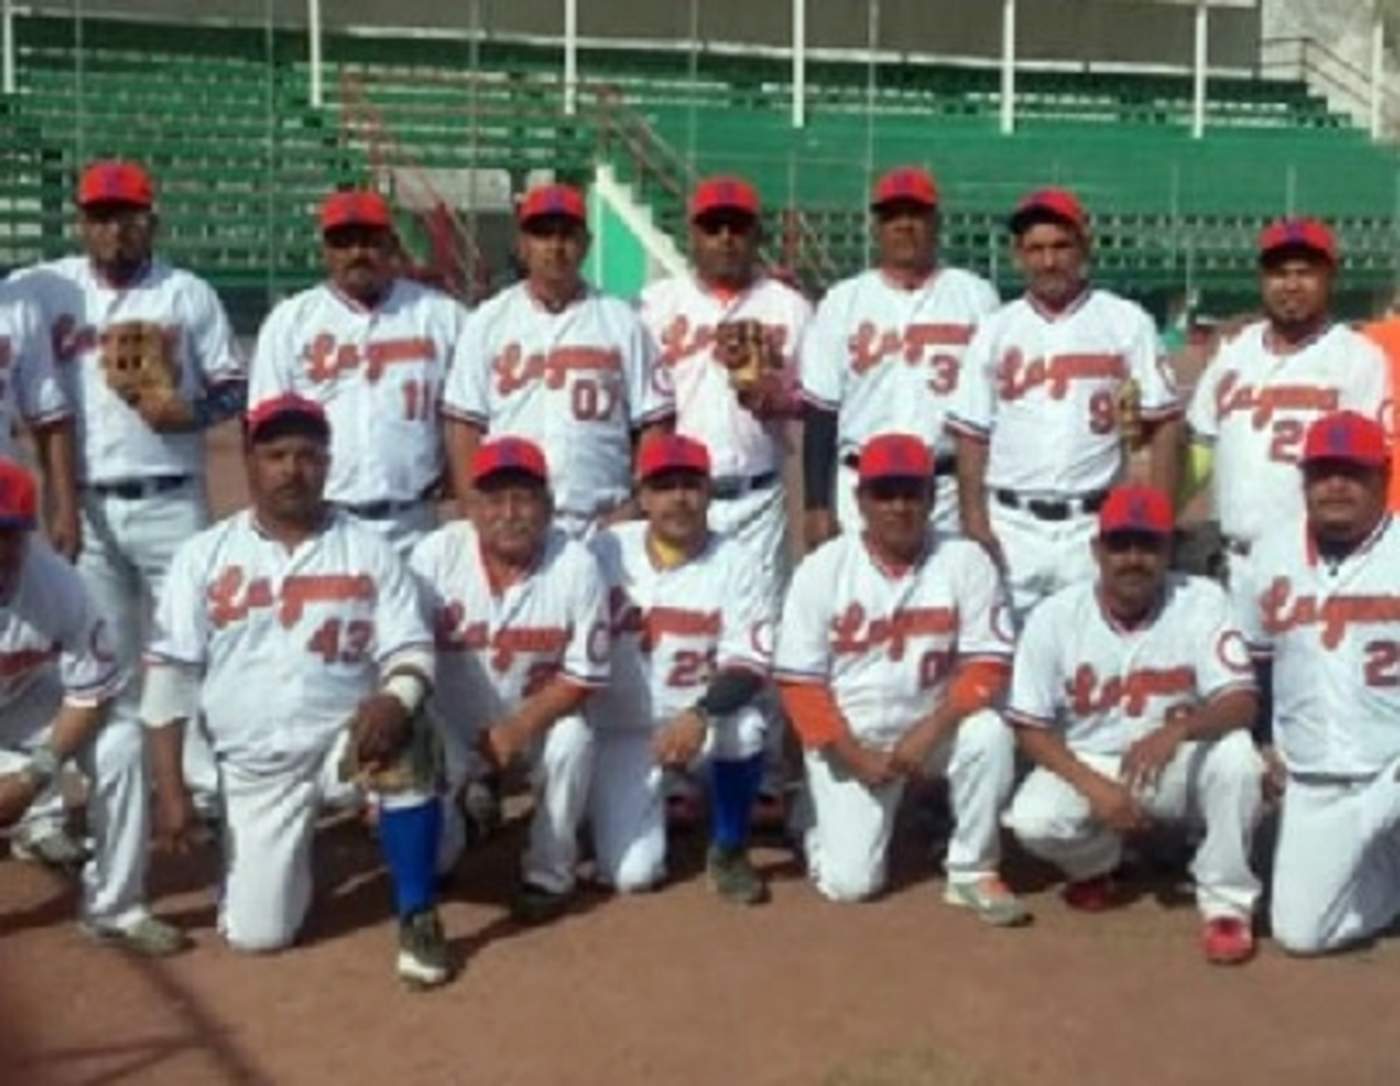 Orgullosos, los integrantes del Deportivo San Juan, posaron para la fotografía del recuerdo, tras lograr el ansiado gallardete.